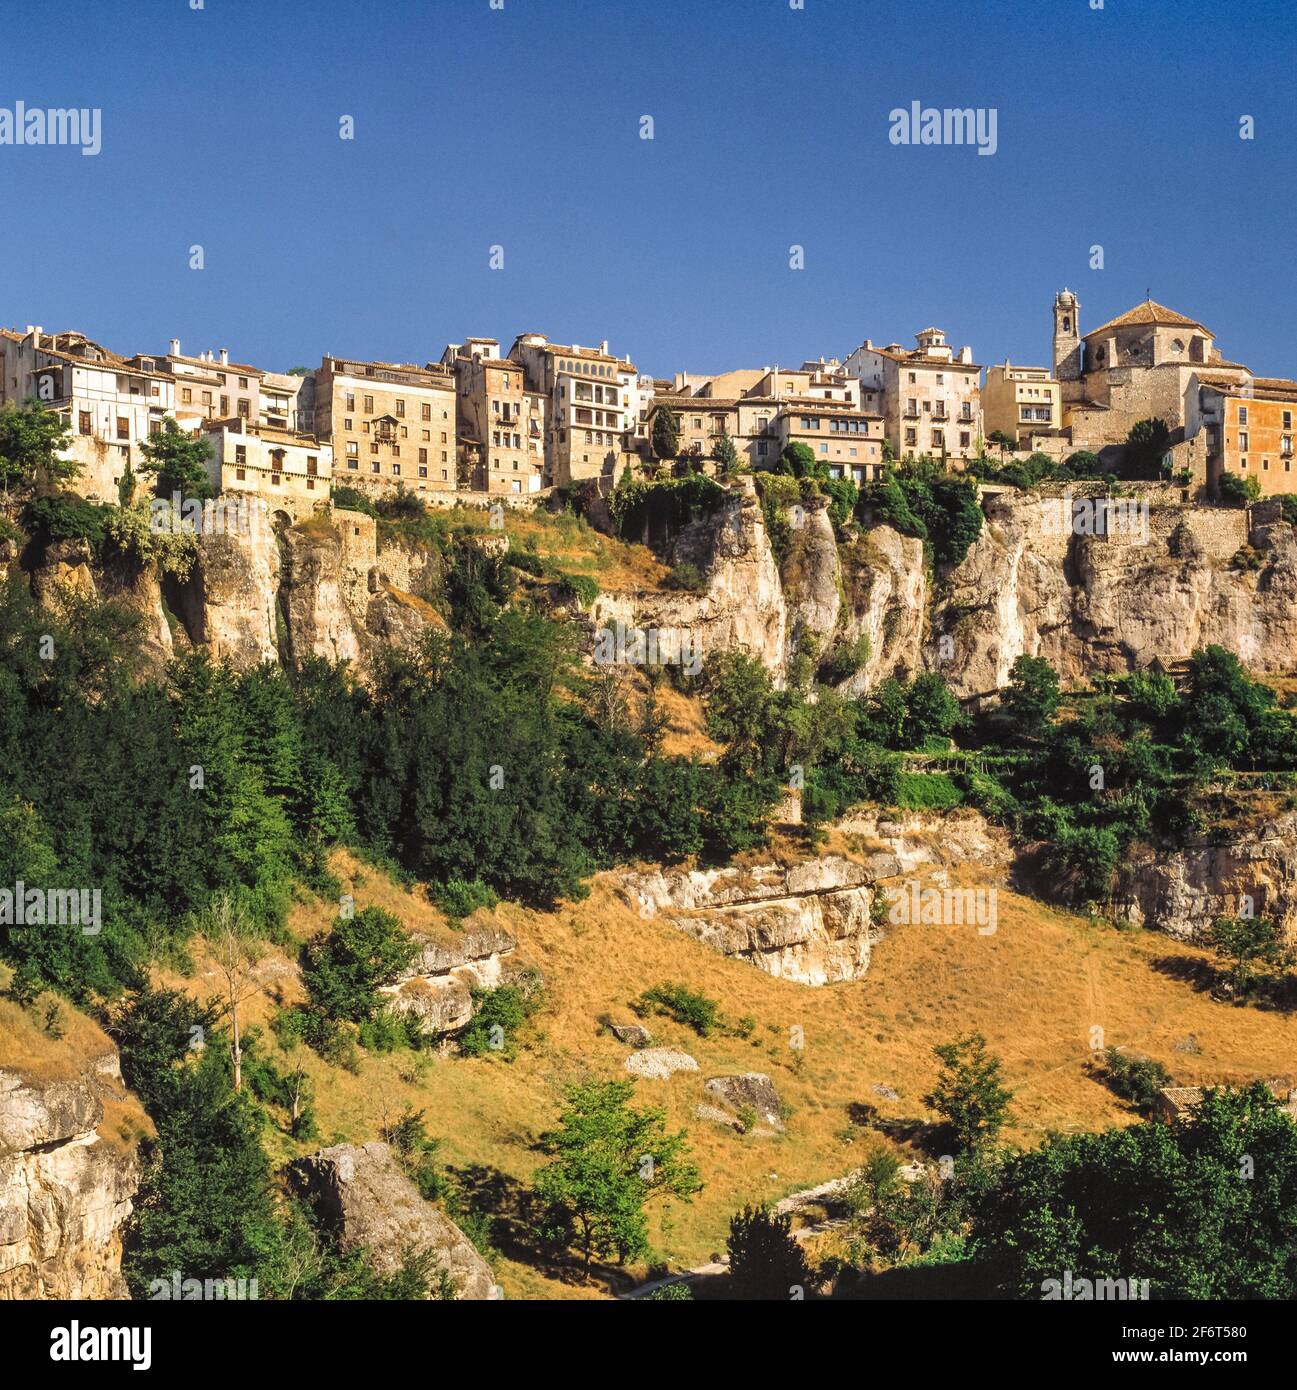 Cuenca est une ville de la communauté autonome de Castileâ. "La Mancha dans le centre de l'Espagne. C'est la capitale de la province de Cuenca. Banque D'Images